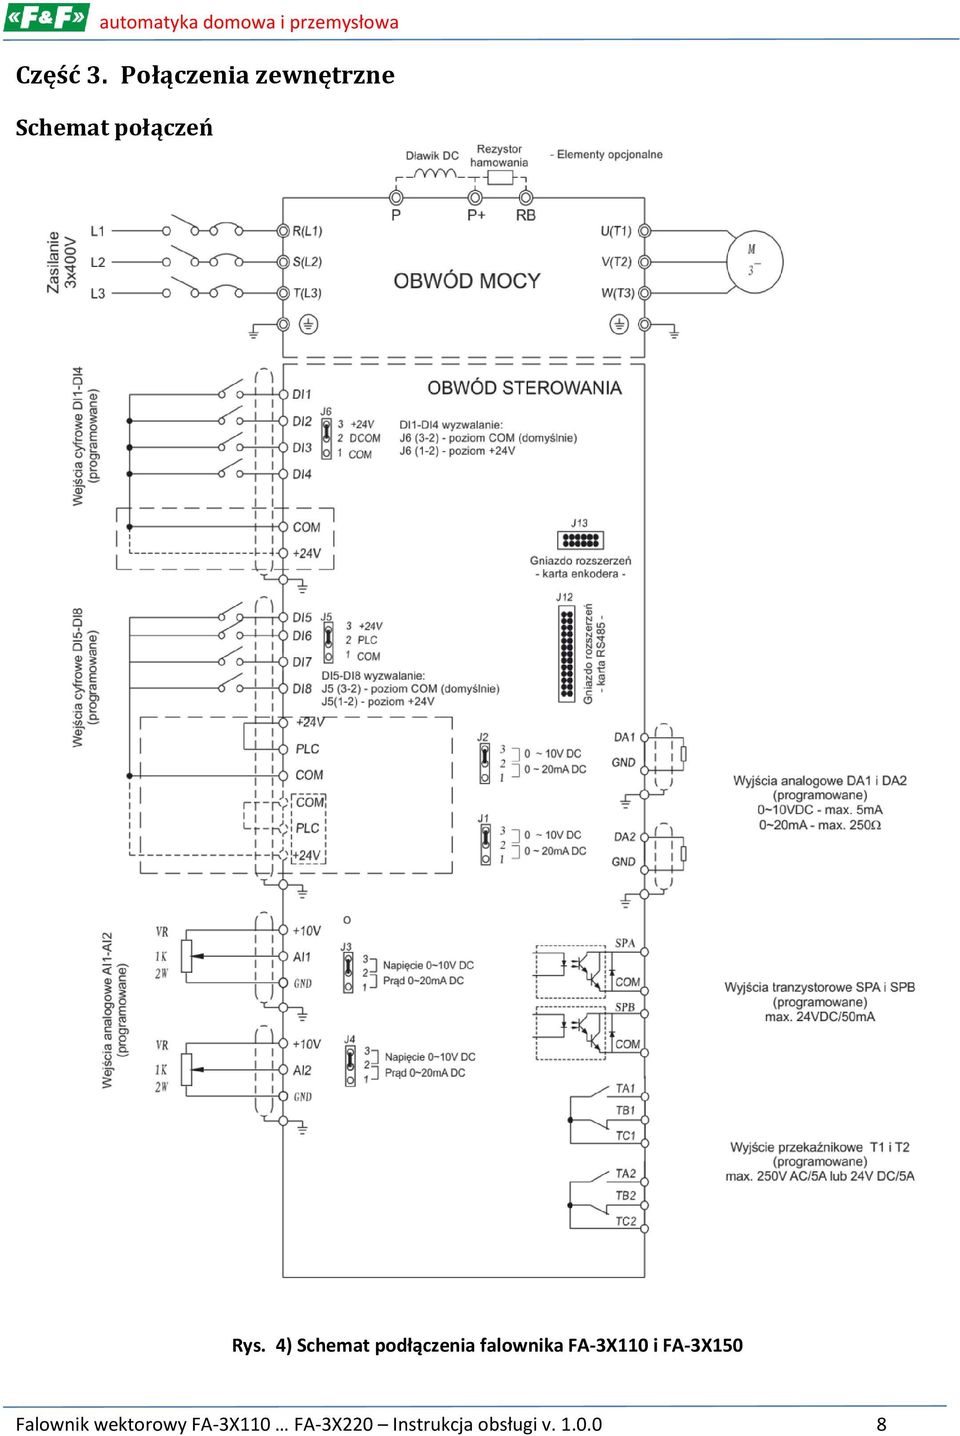 4) Schemat podłączenia falownika FA-3X110